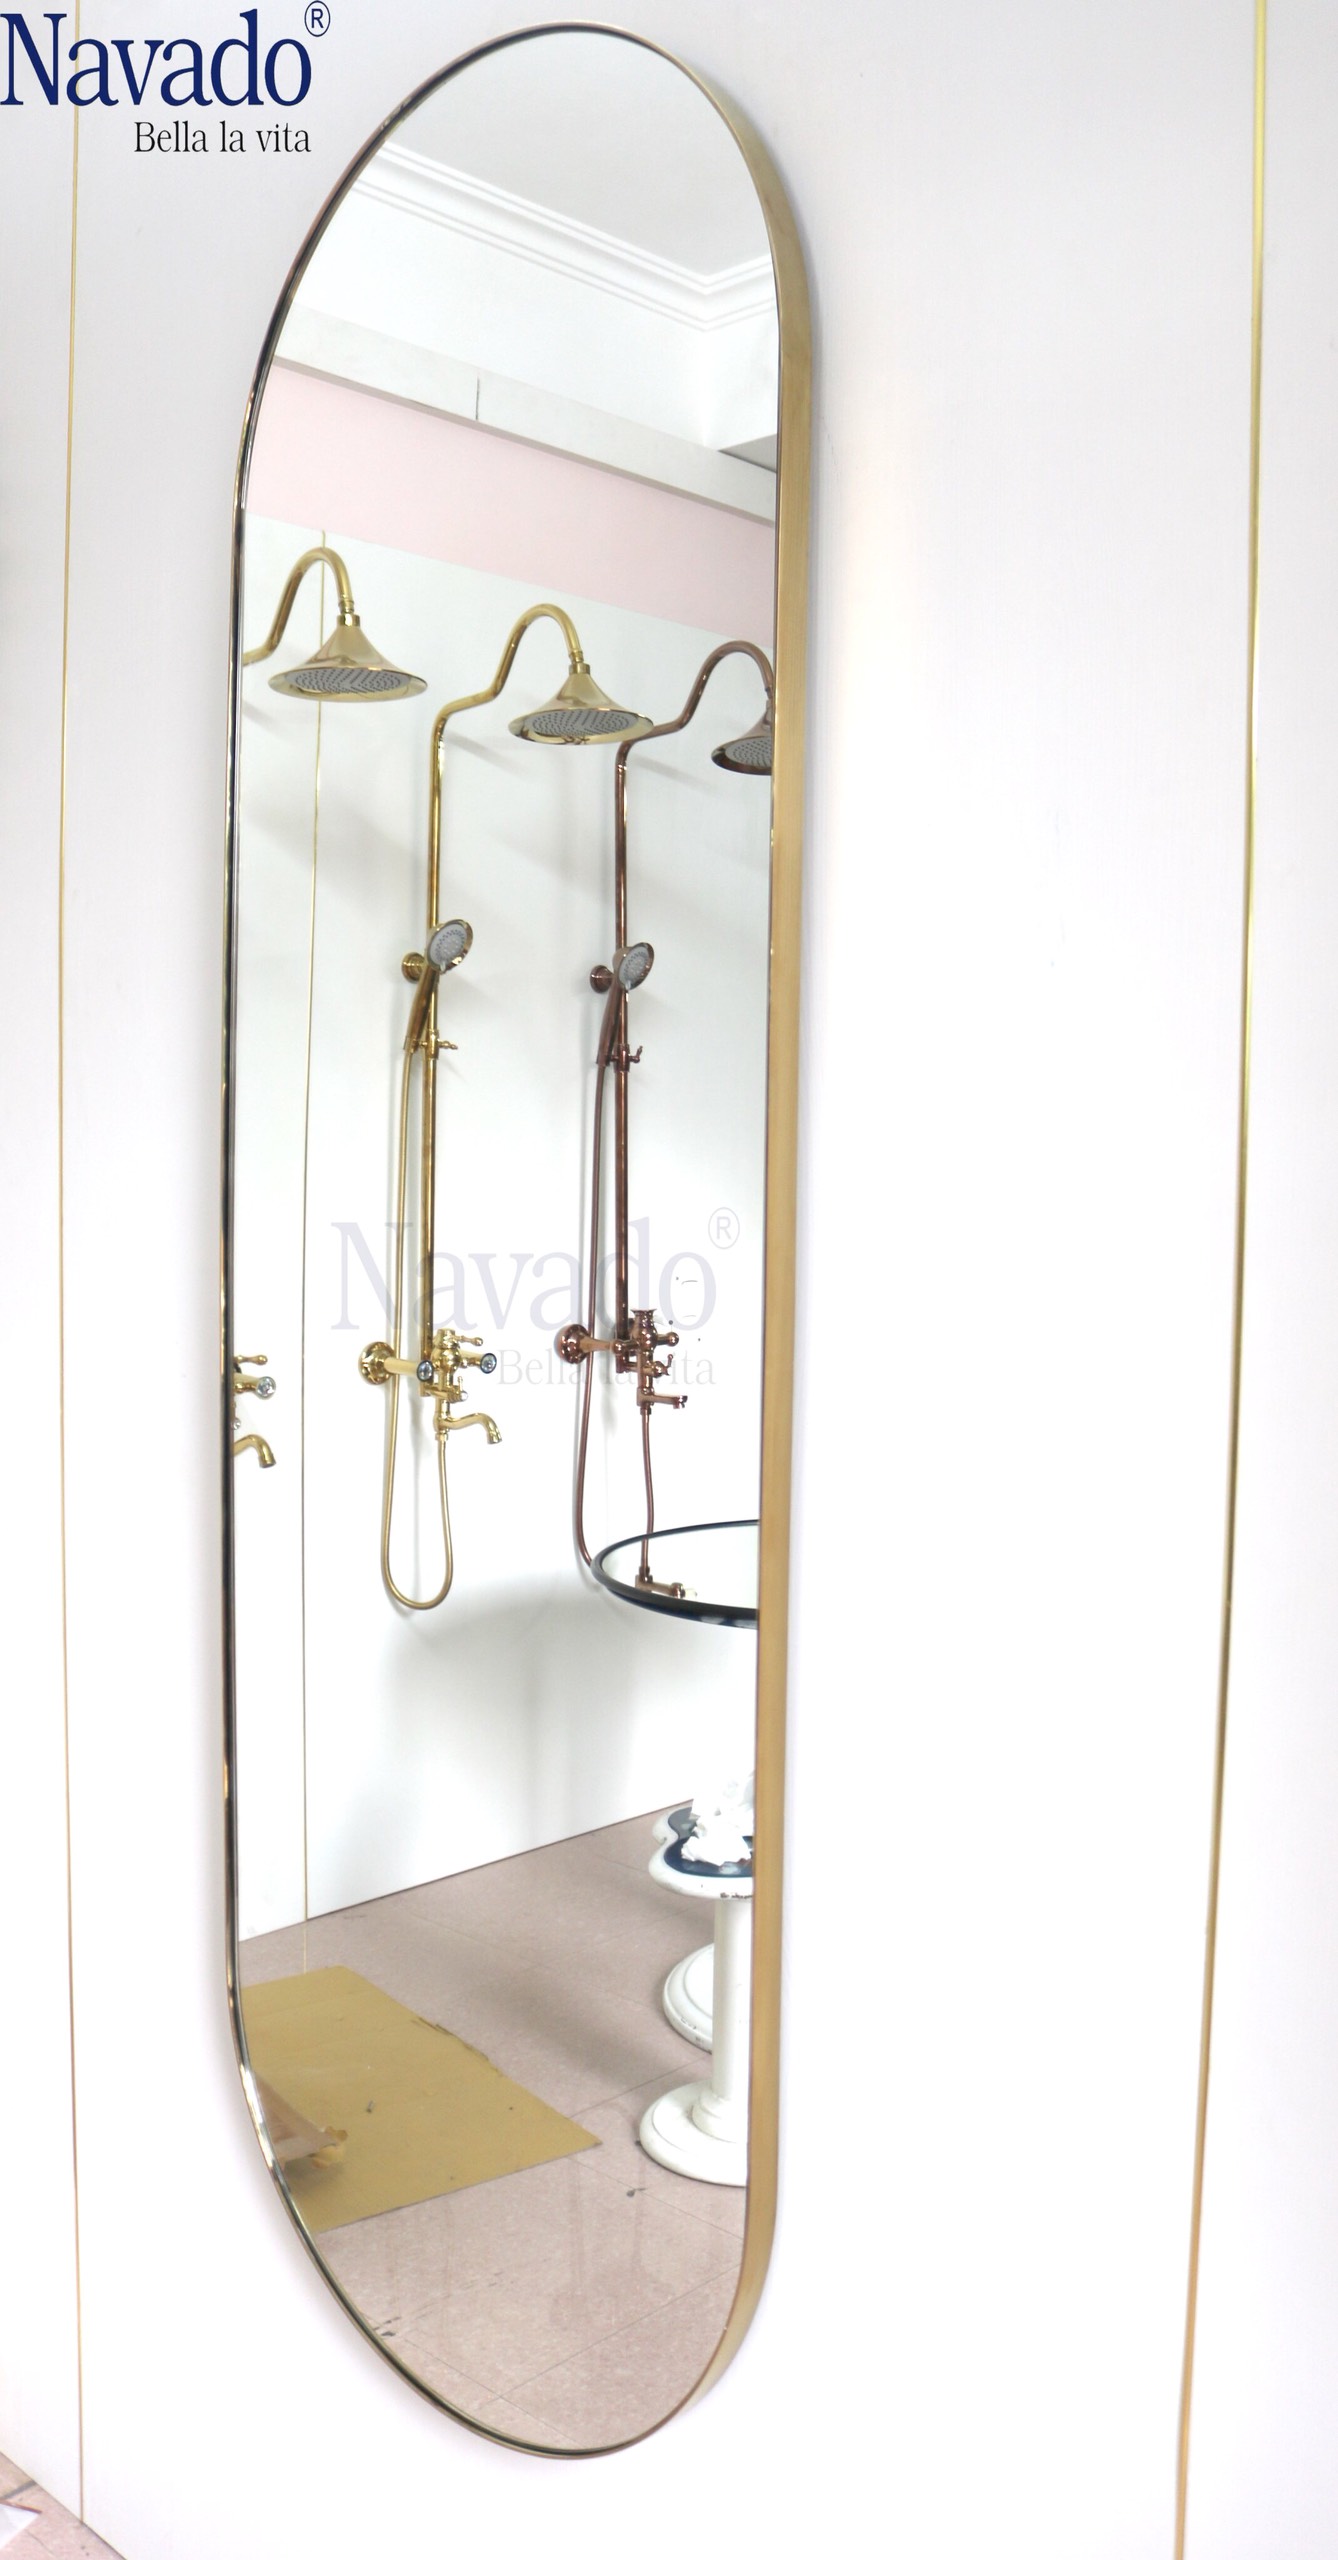 Khung gương soi toàn thân phòng tắm inox: Không gian phòng tắm của bạn sẽ trở nên sang trọng và hiện đại hơn với khung gương soi toàn thân phòng tắm inox. Sản phẩm được làm từ chất liệu SUS304 cao cấp, không gỉ sét và bền đẹp trong thời gian dài. Ngoài ra, khung gương còn được thiết kế theo kiểu dáng đẹp mắt, giúp bạn tạo điểm nhấn cho căn phòng của mình.